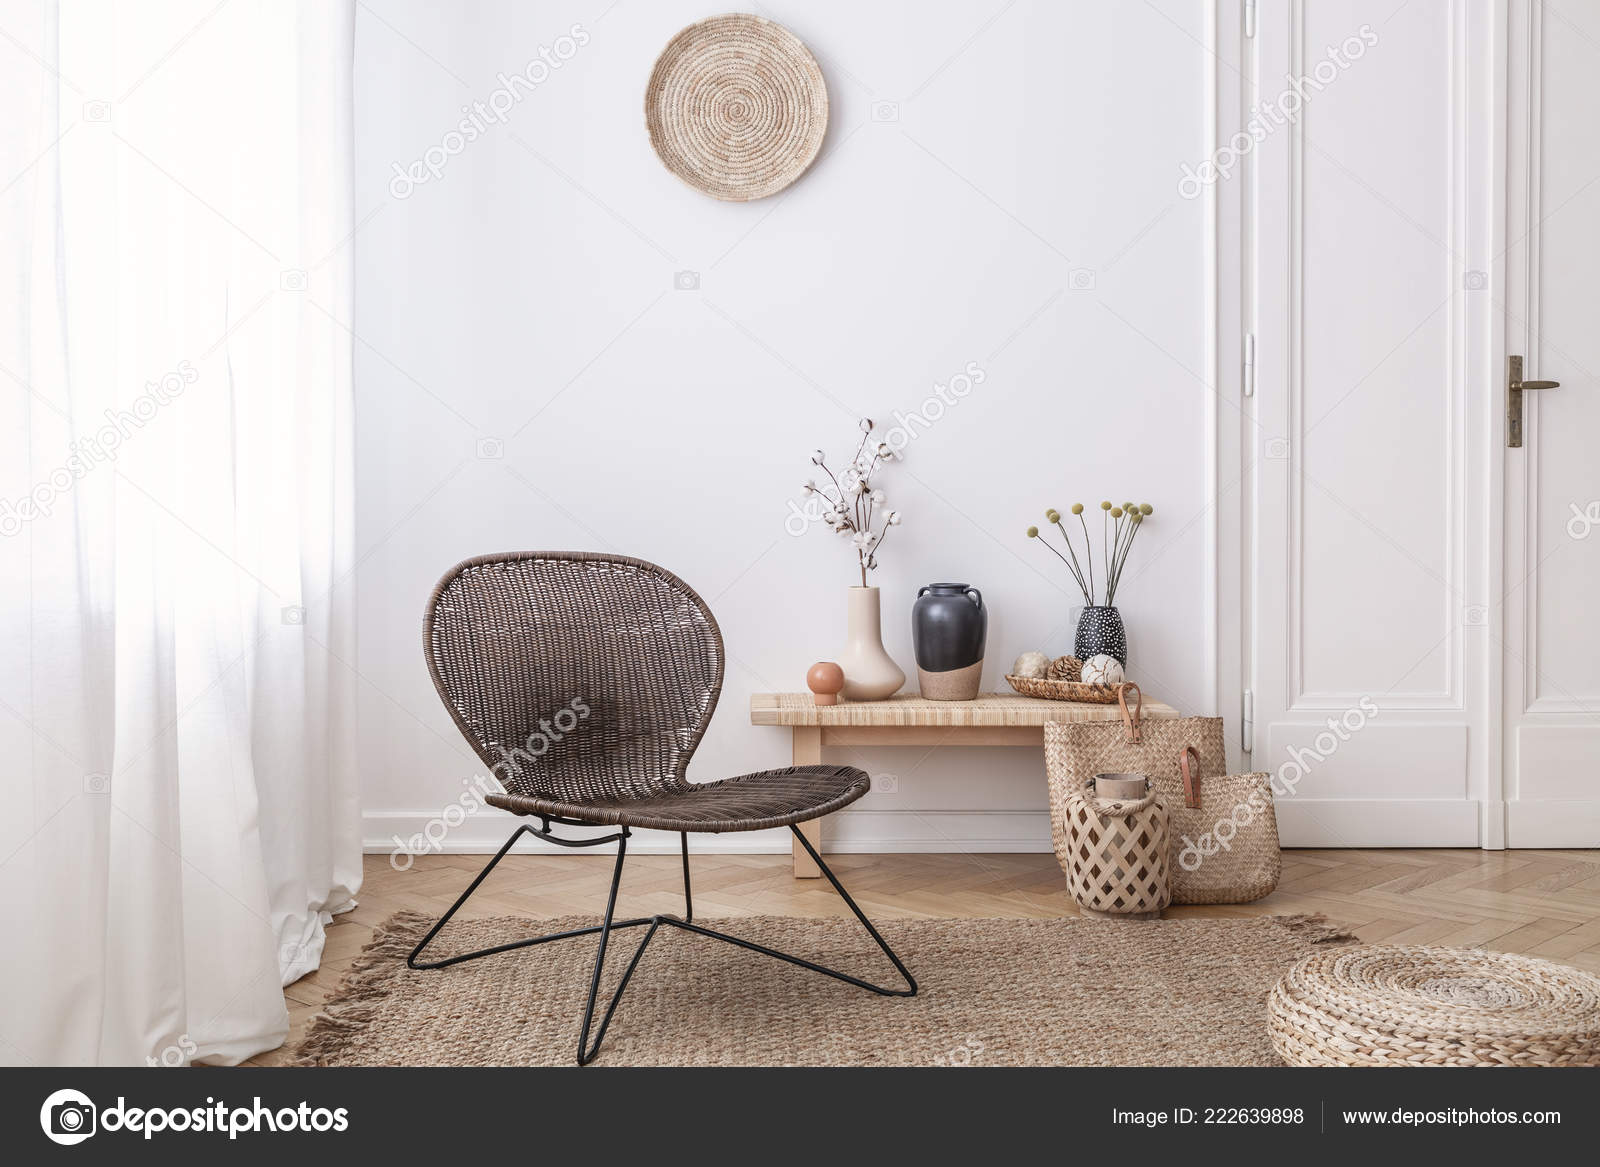 Verrassend Dark Modern Wicker Chair White Living Room Interior Wooden Bench PU-14